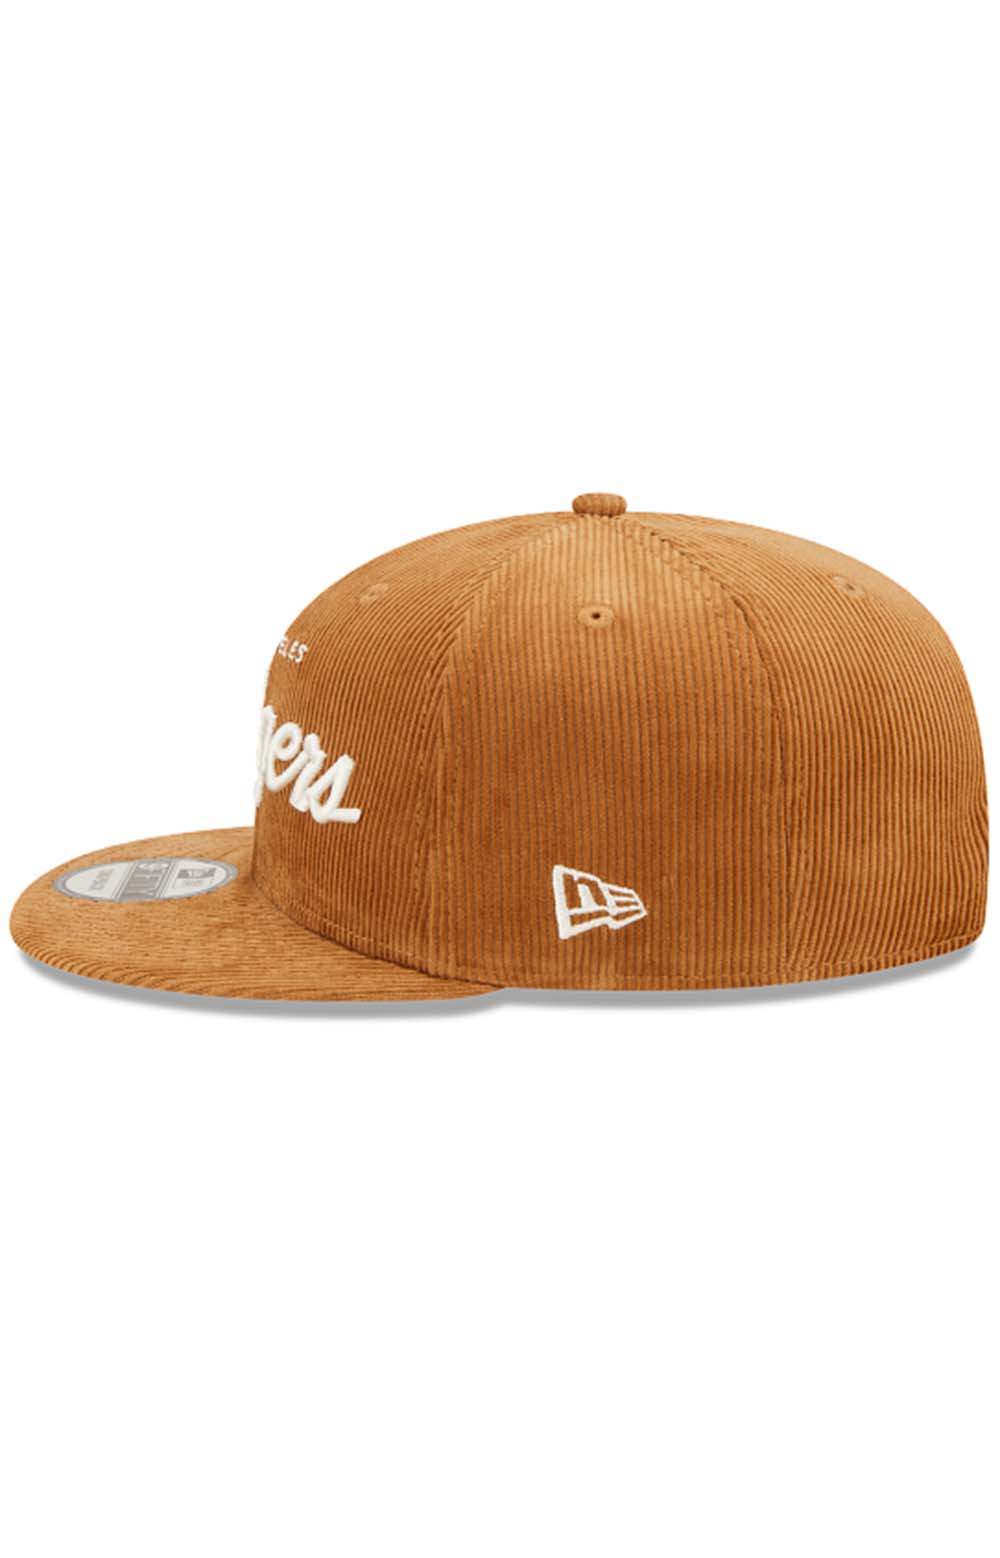 LA Dodgers Cord Script 9Fifty Snap-Back Hat